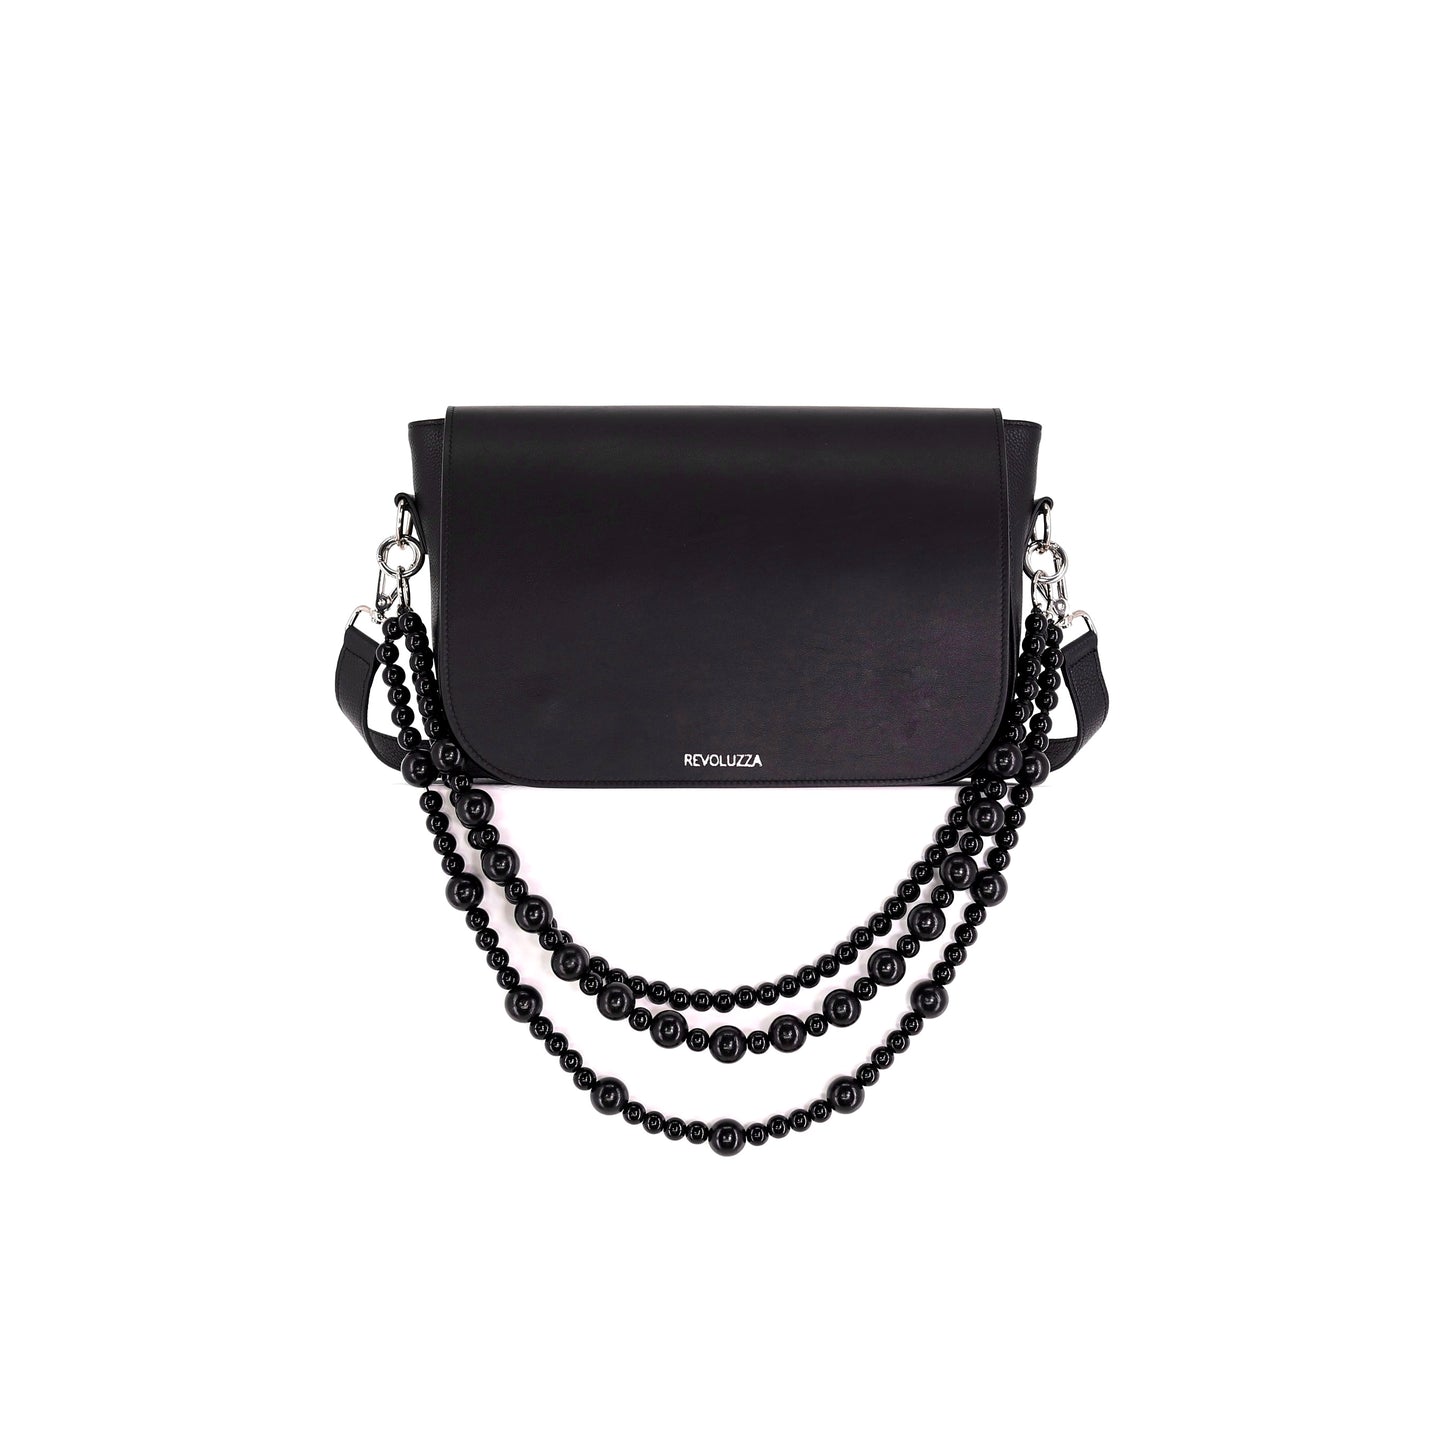 EMILIA Handtasche aus echtem Leder in schwarz, medium